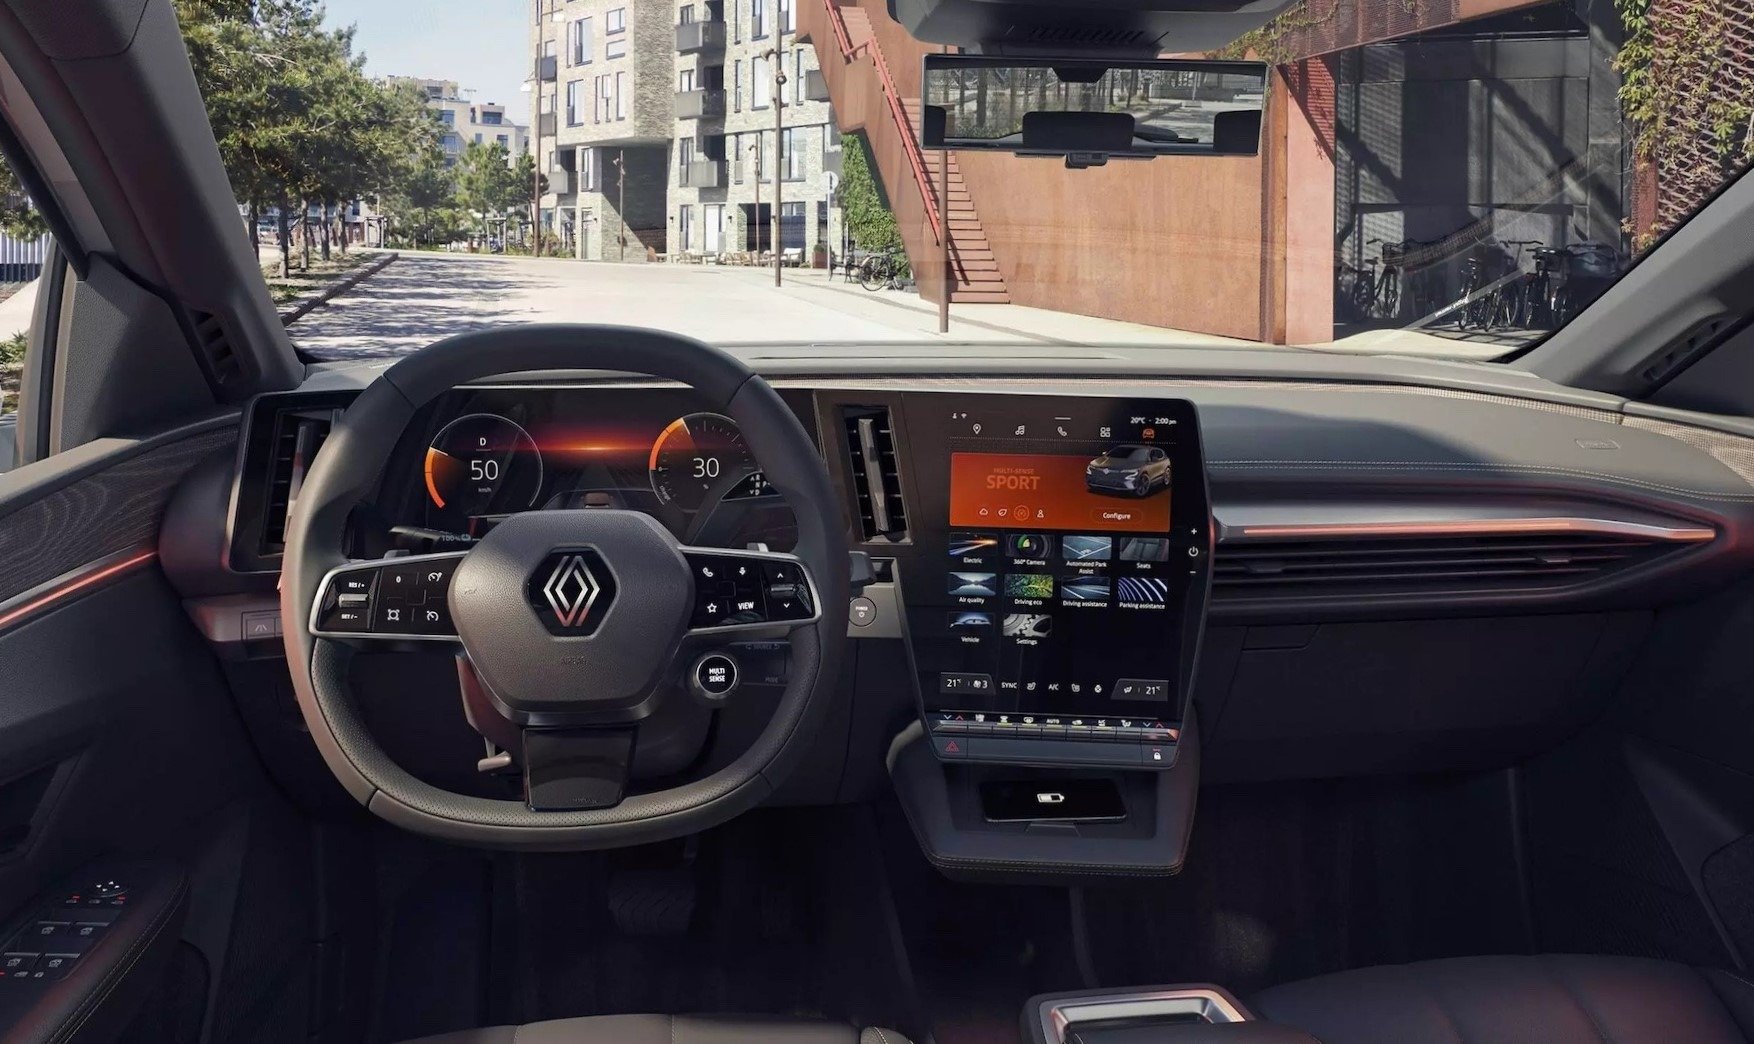 Najnowszy samochodowy system inforozrywki LG zadebiutuje w elektrycznym Renault Mégane E-Tech